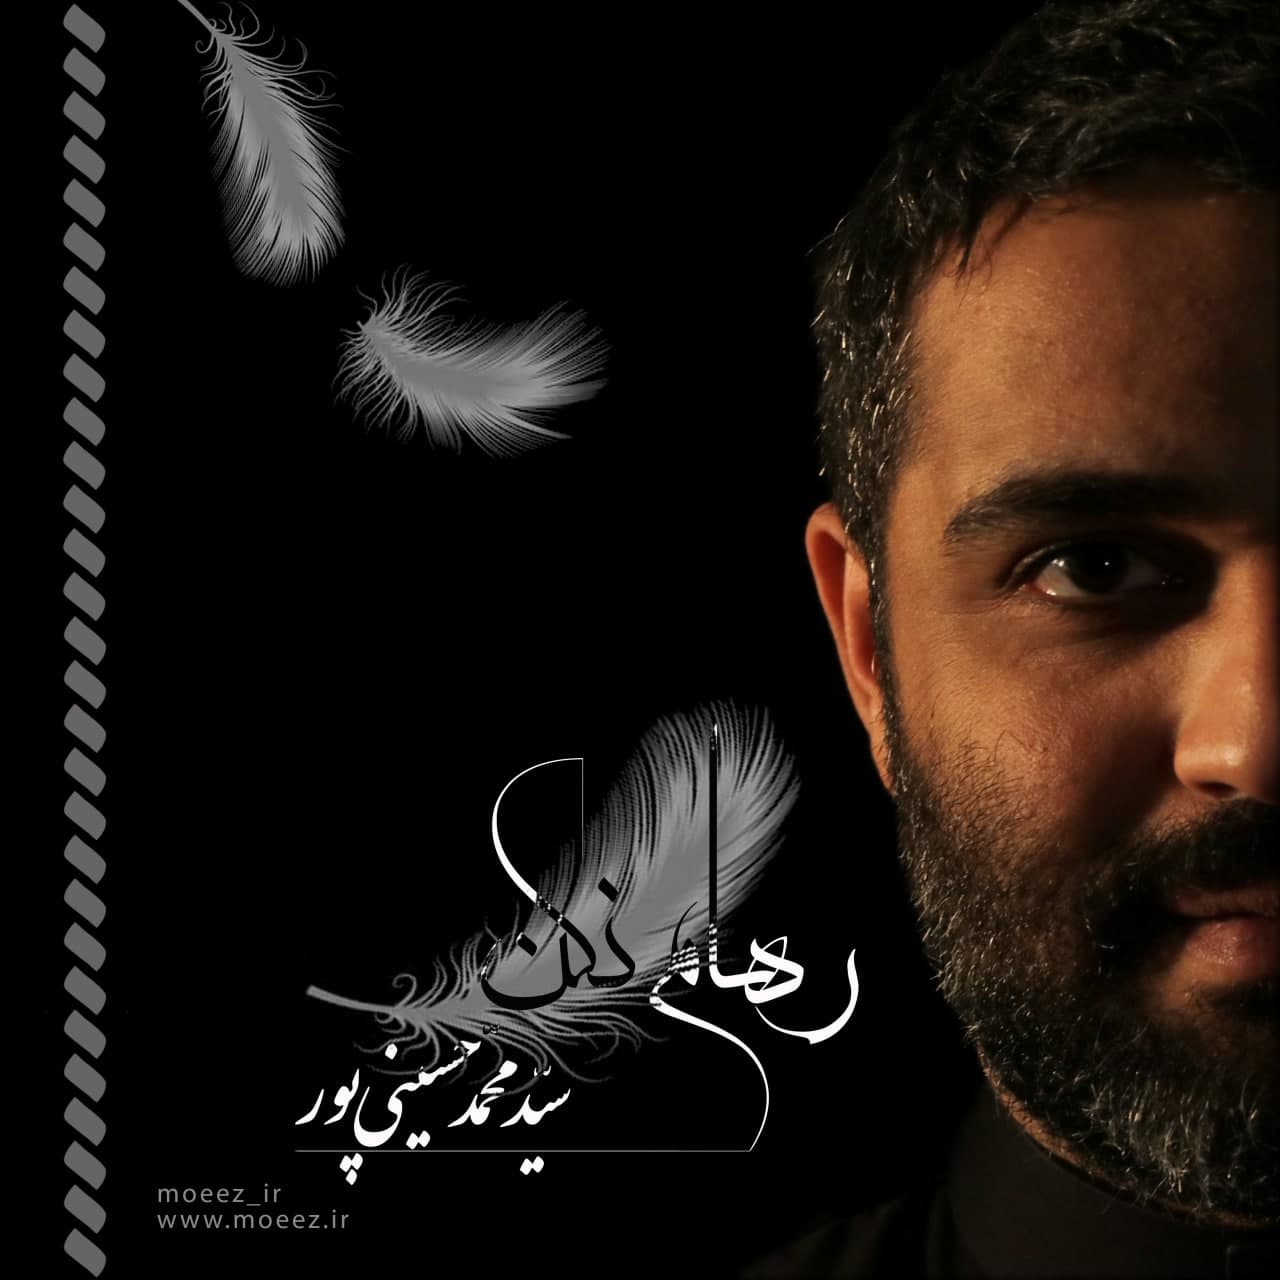 دانلود آلبوم جدید سید محمد حسینی پور بنام رهام نکن